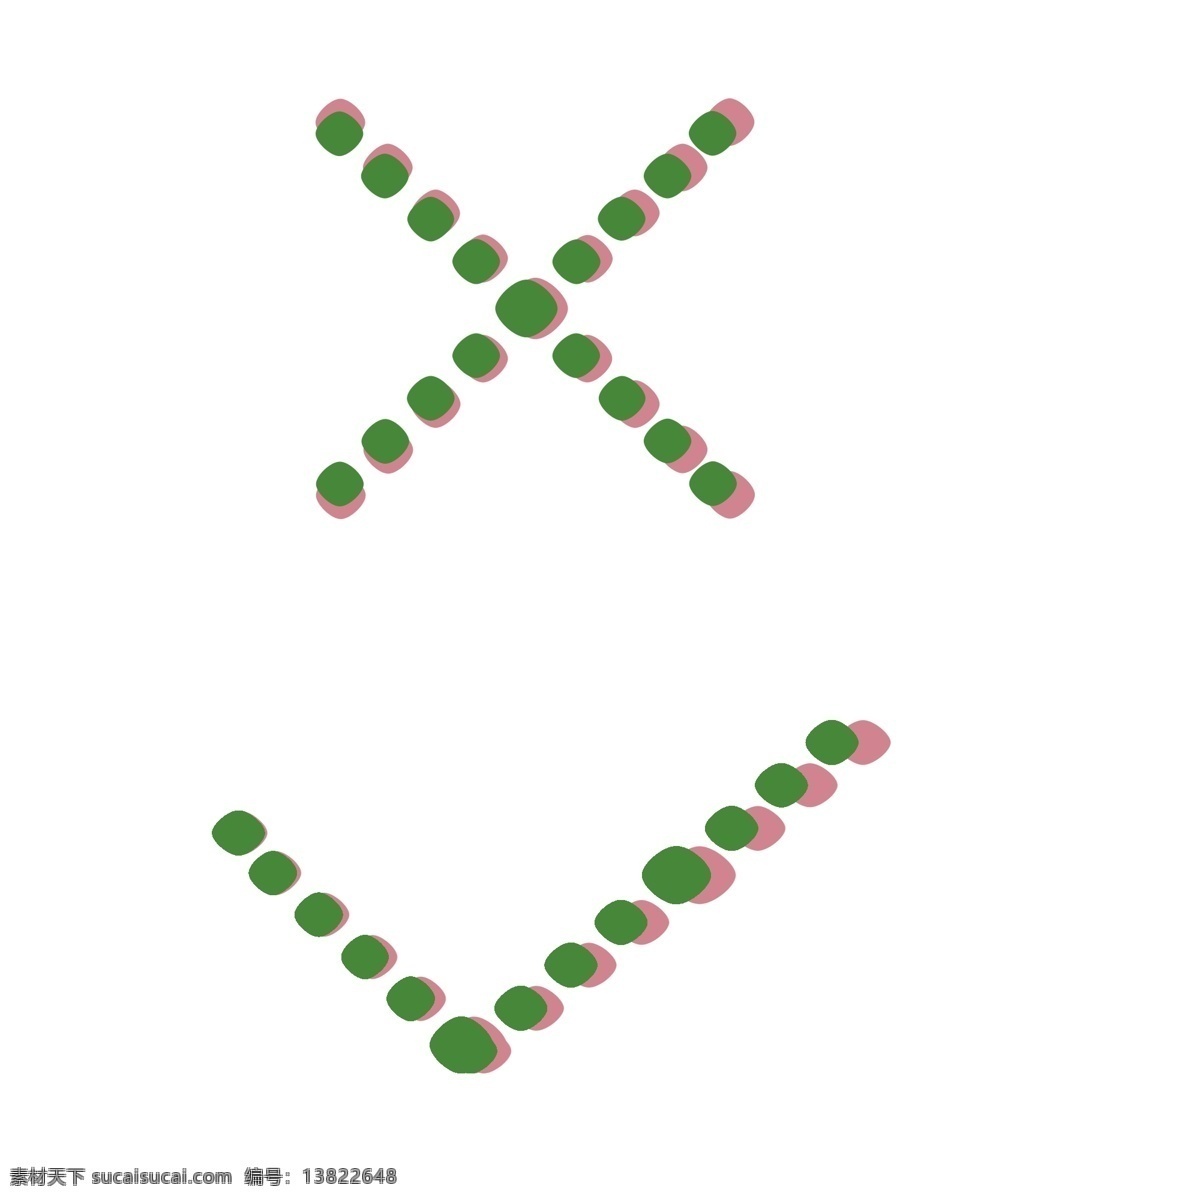 对号 错号 手绘 水彩 小 装饰 错 判断符号 粉色绿色 叠加 手绘符号 常用符号 小装饰